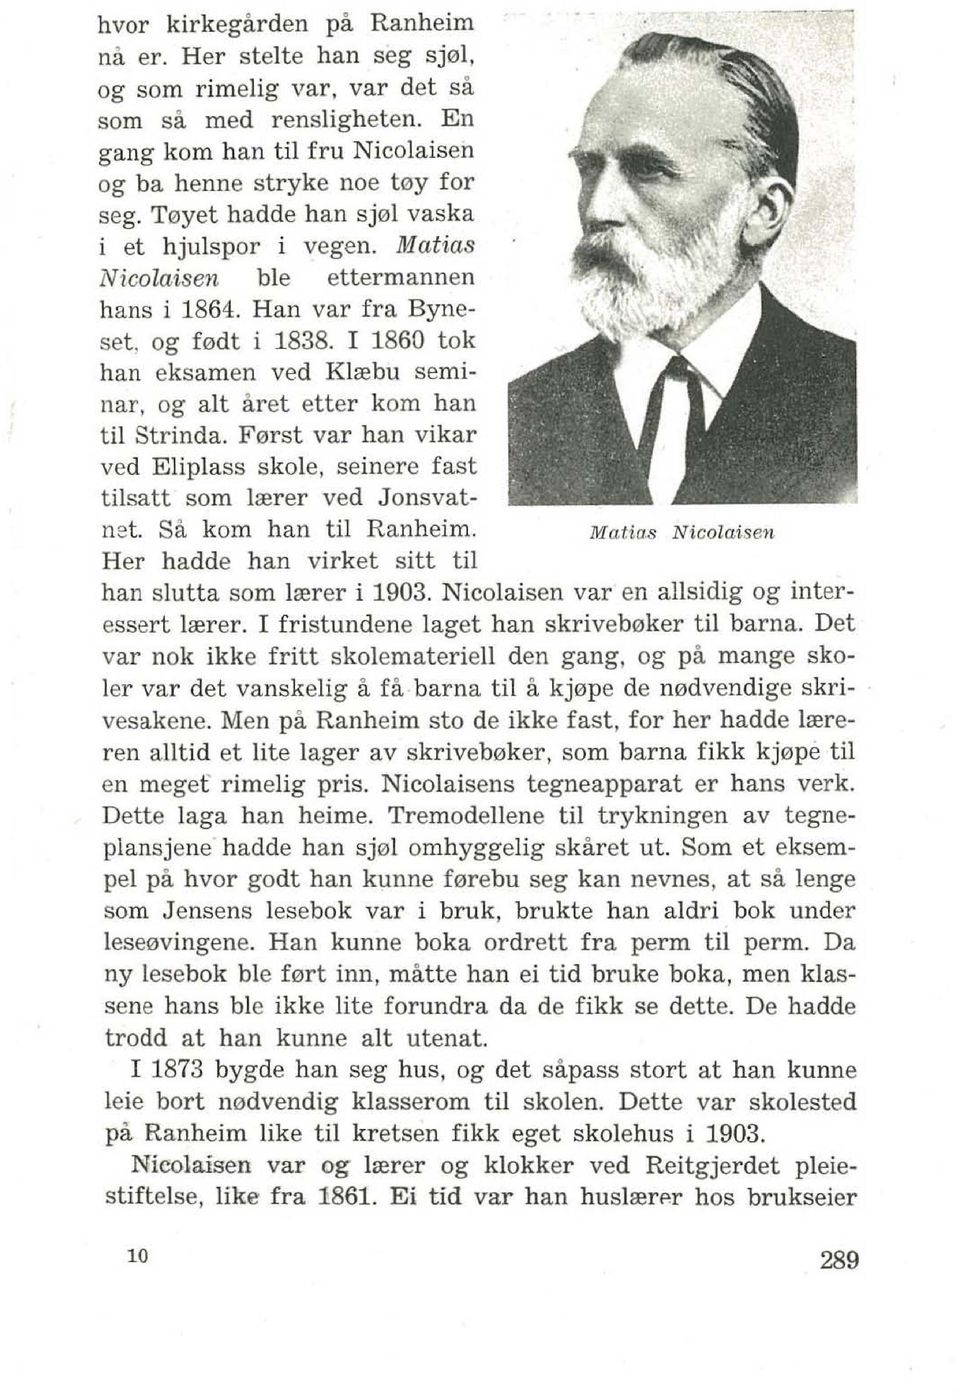 I 1860 tok han eksamen ved Klrebu seminar, og alt aret etter kom han til Strinda. F 0rst var han vikar ved Eliplass skole, seinere fast tilsatt som lrerer ved J onsvatnet. Sa kom han til Ranheim. Mal.